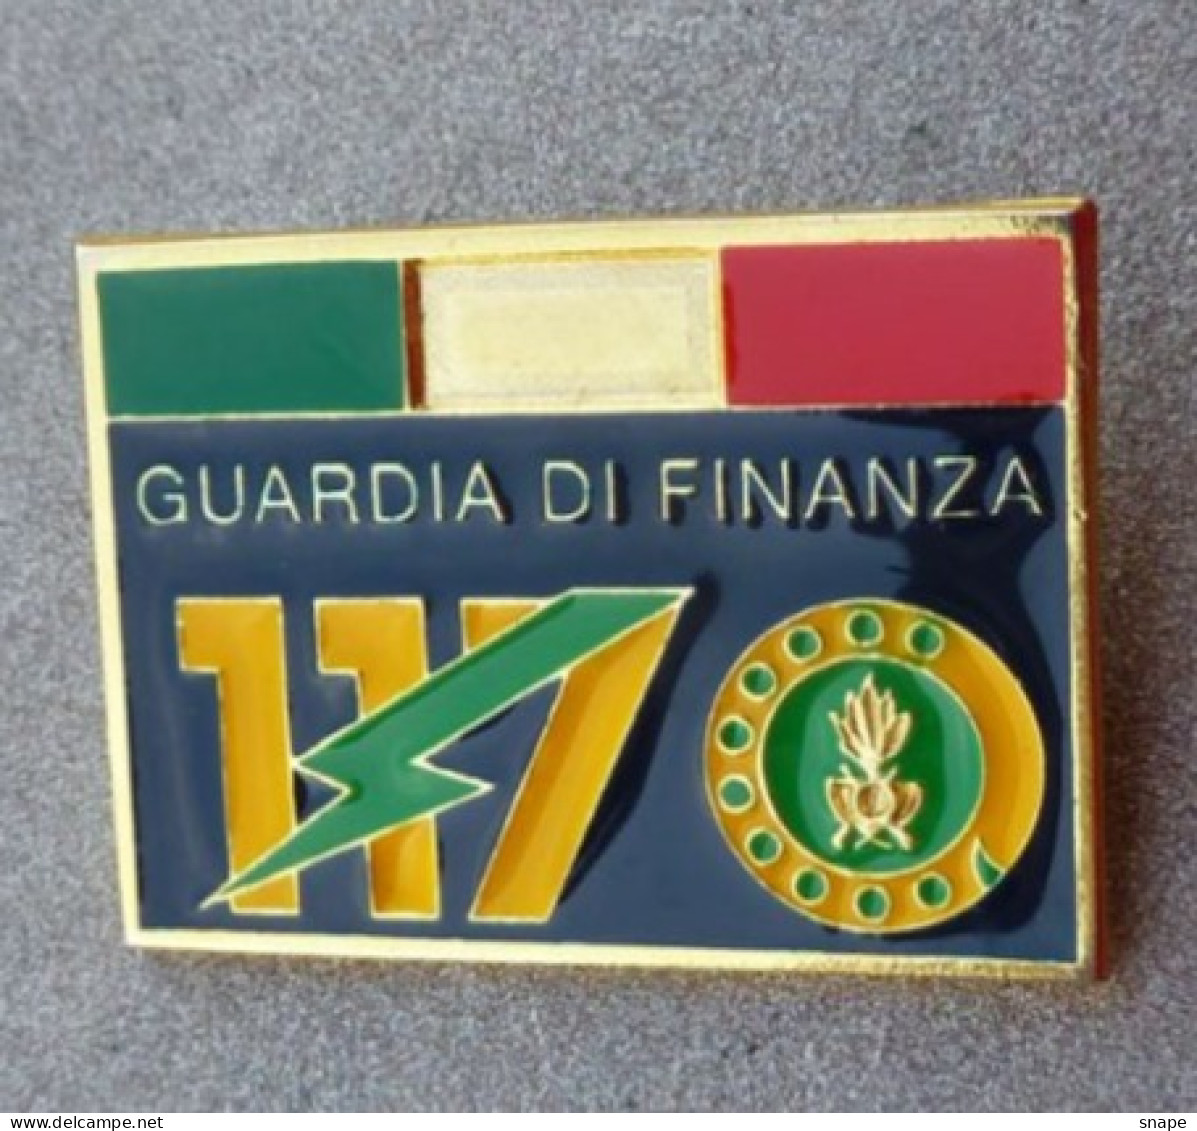 Distintivo Pubblicitario 117 - Guardia Di Finanza - Dismesso - Anni 80/90 - Used Obsolete (286) - Police